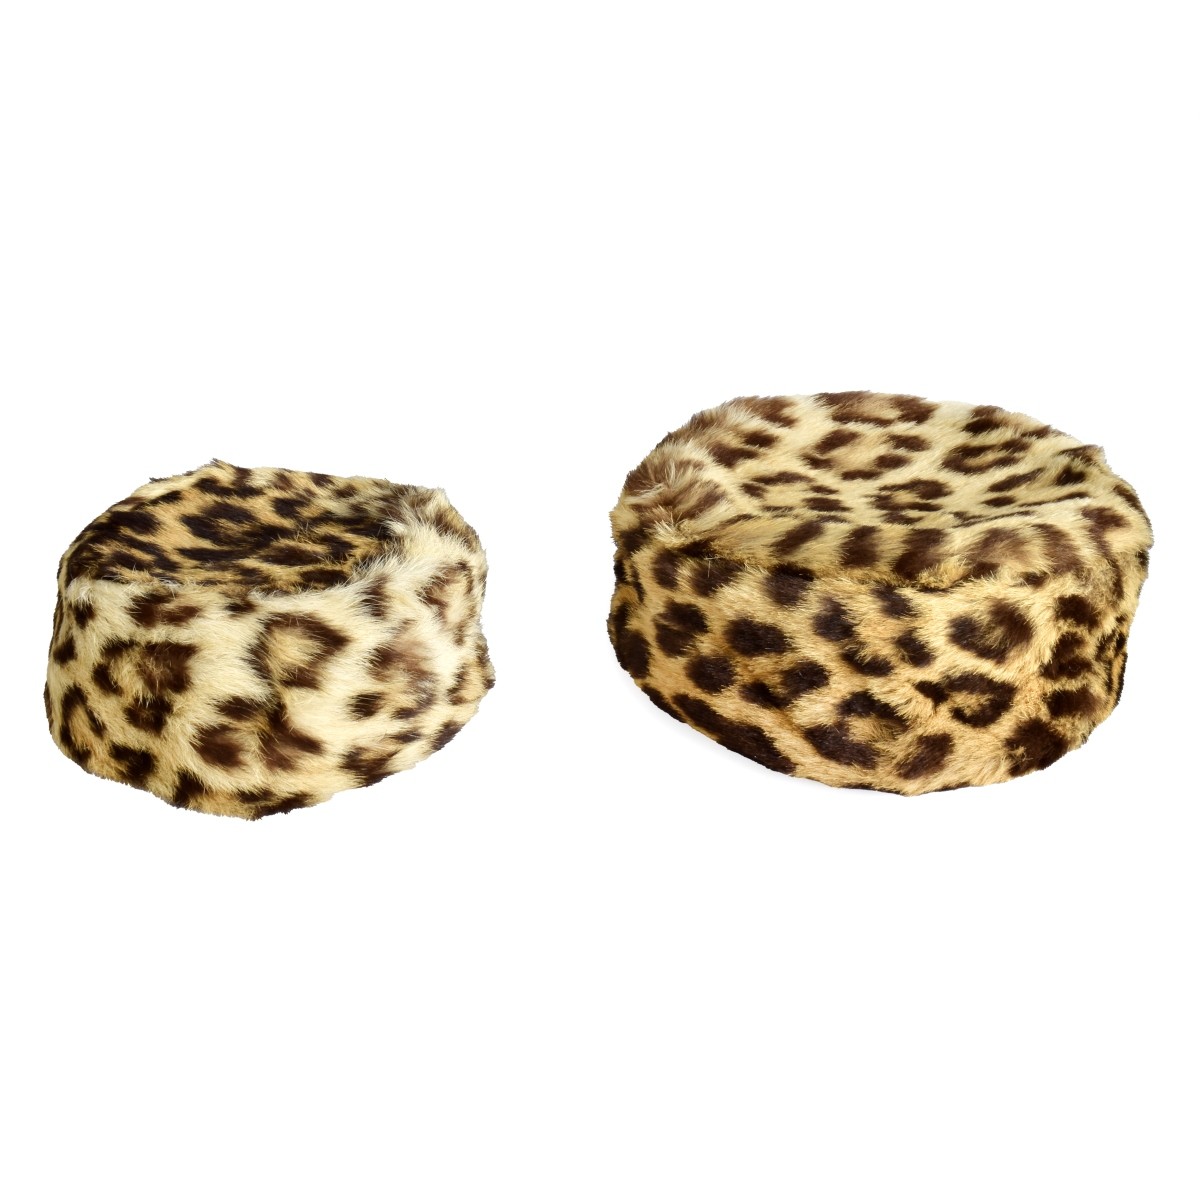 Two Genuine Leopard Skin Hats